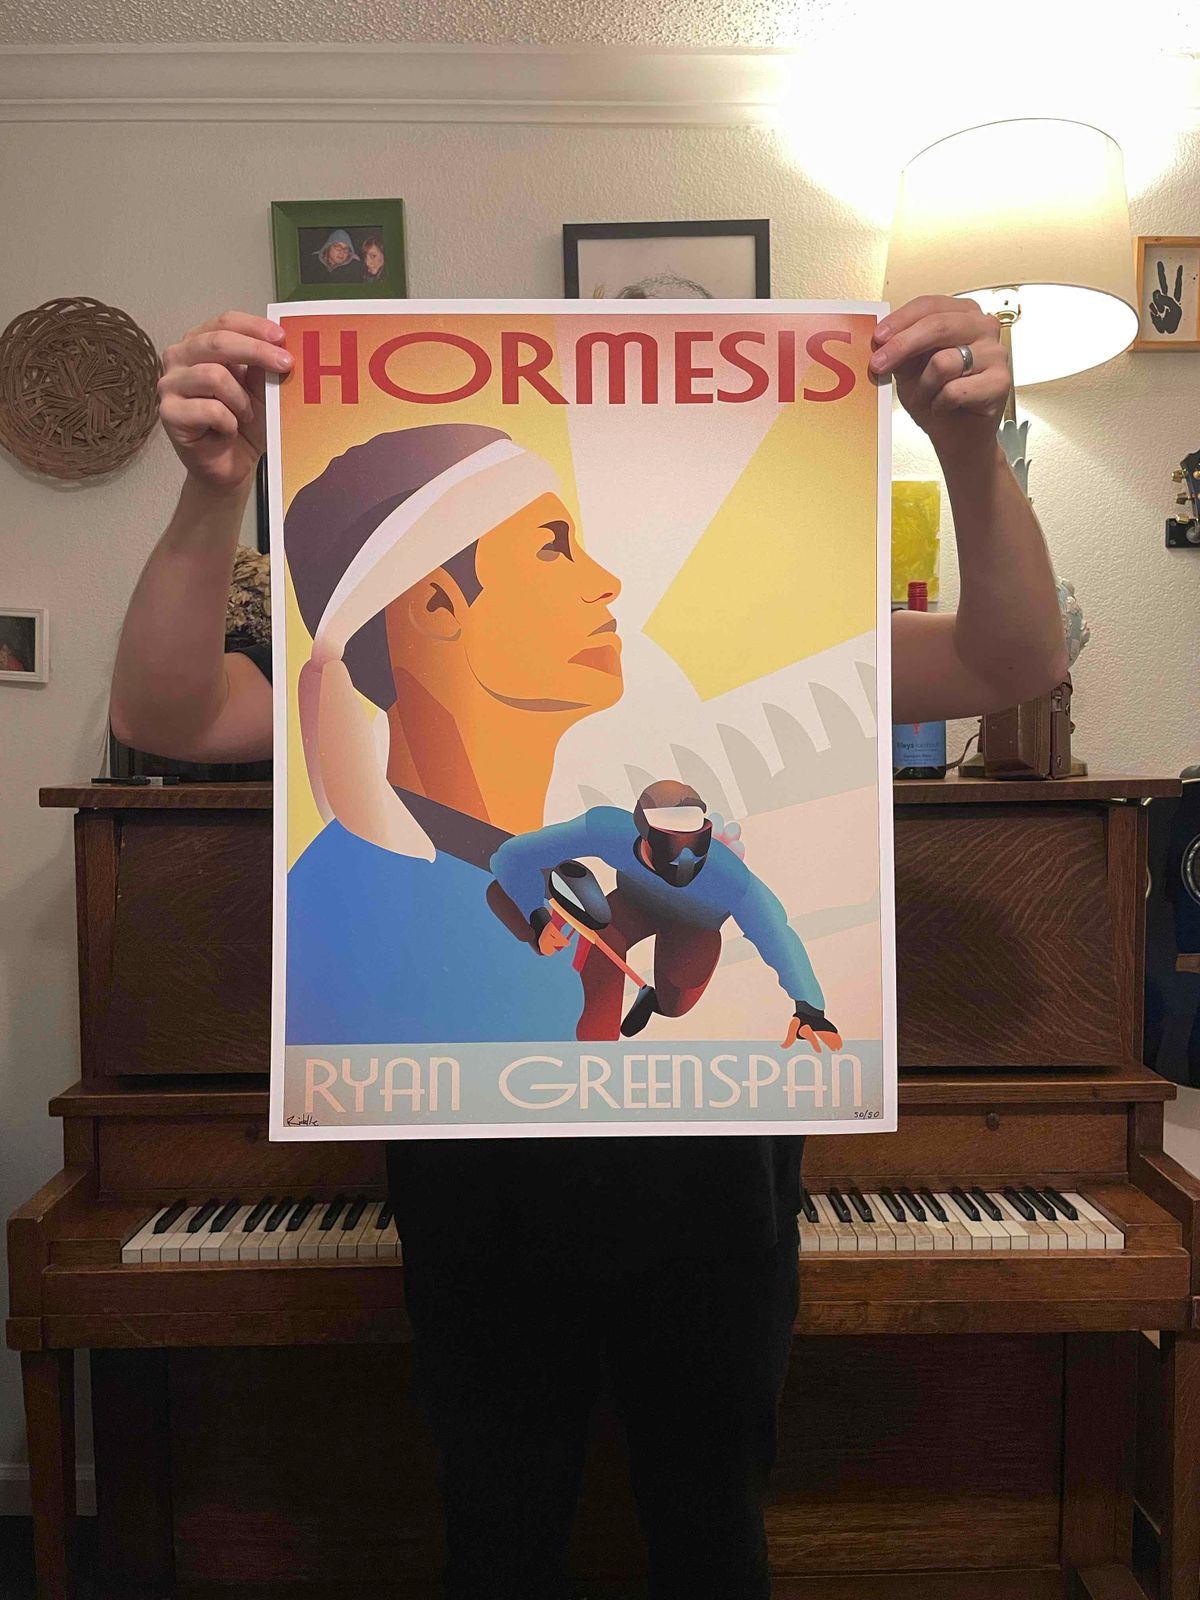 Hormesis Poster (Ryan Greenspan)